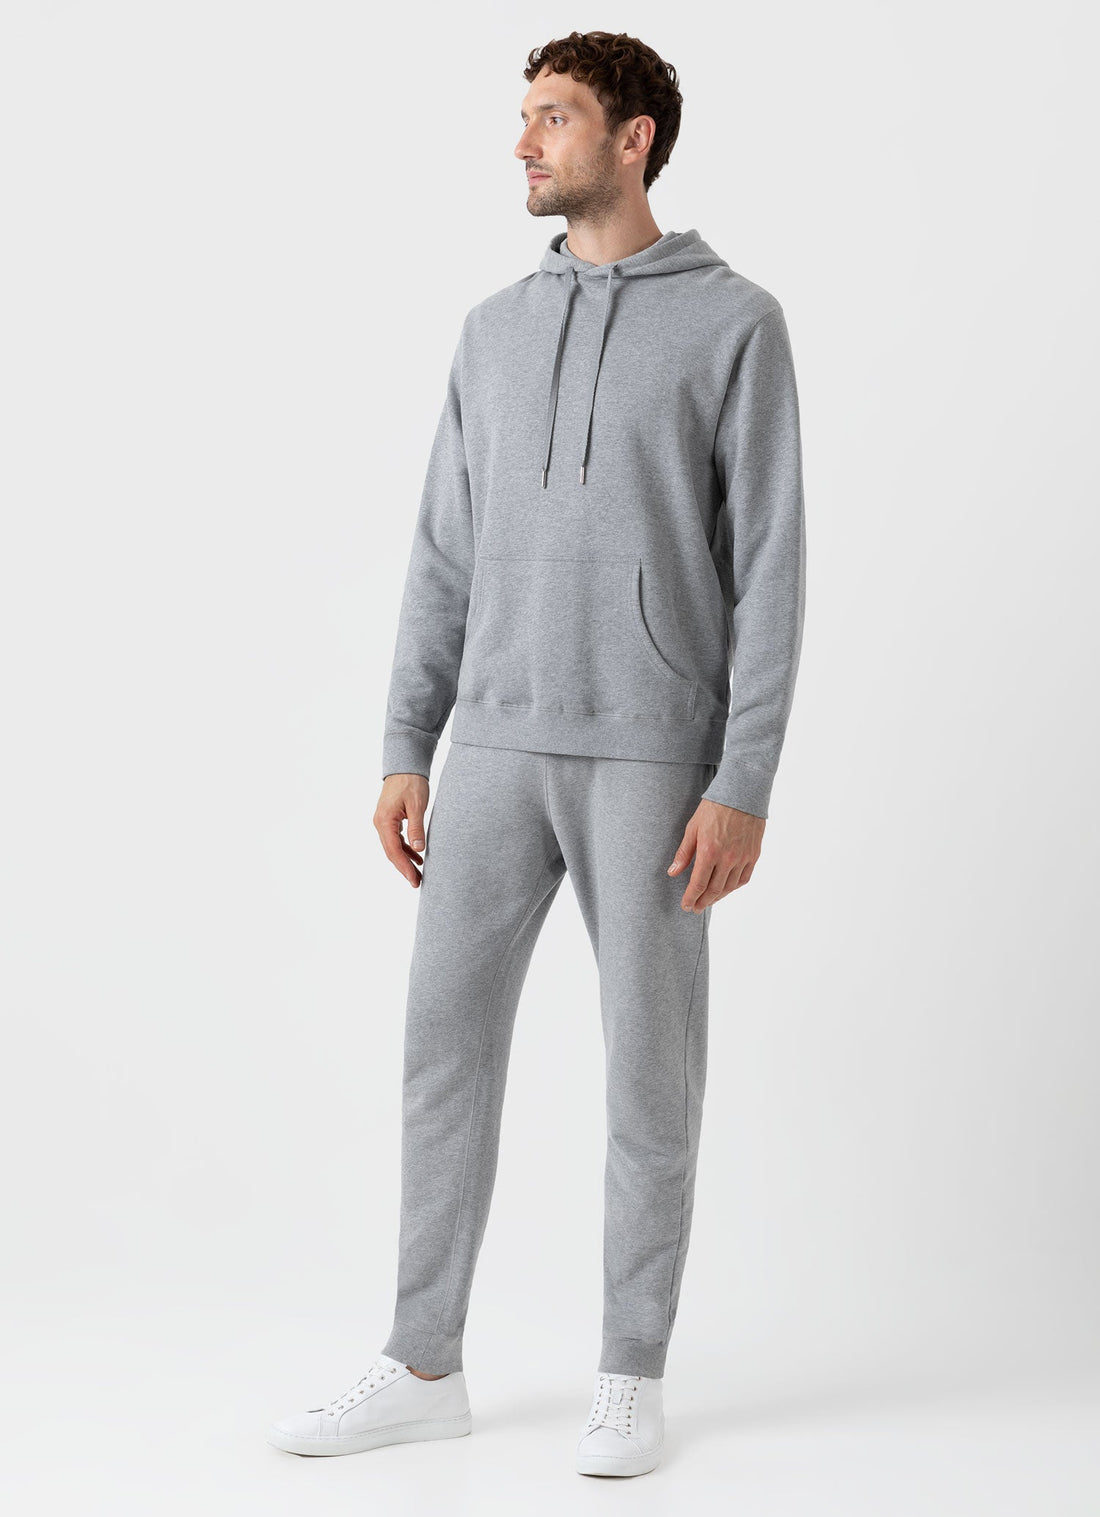 Men'S Velour Tracksuit Modern Athletic Suits for Men Hoodie Men Xxxl Mens  Navy Sweatpants Set for Men Short White Hoodies for Women Sweatpants Men  Warehouse  Warehouse Deals at  Men's Clothing